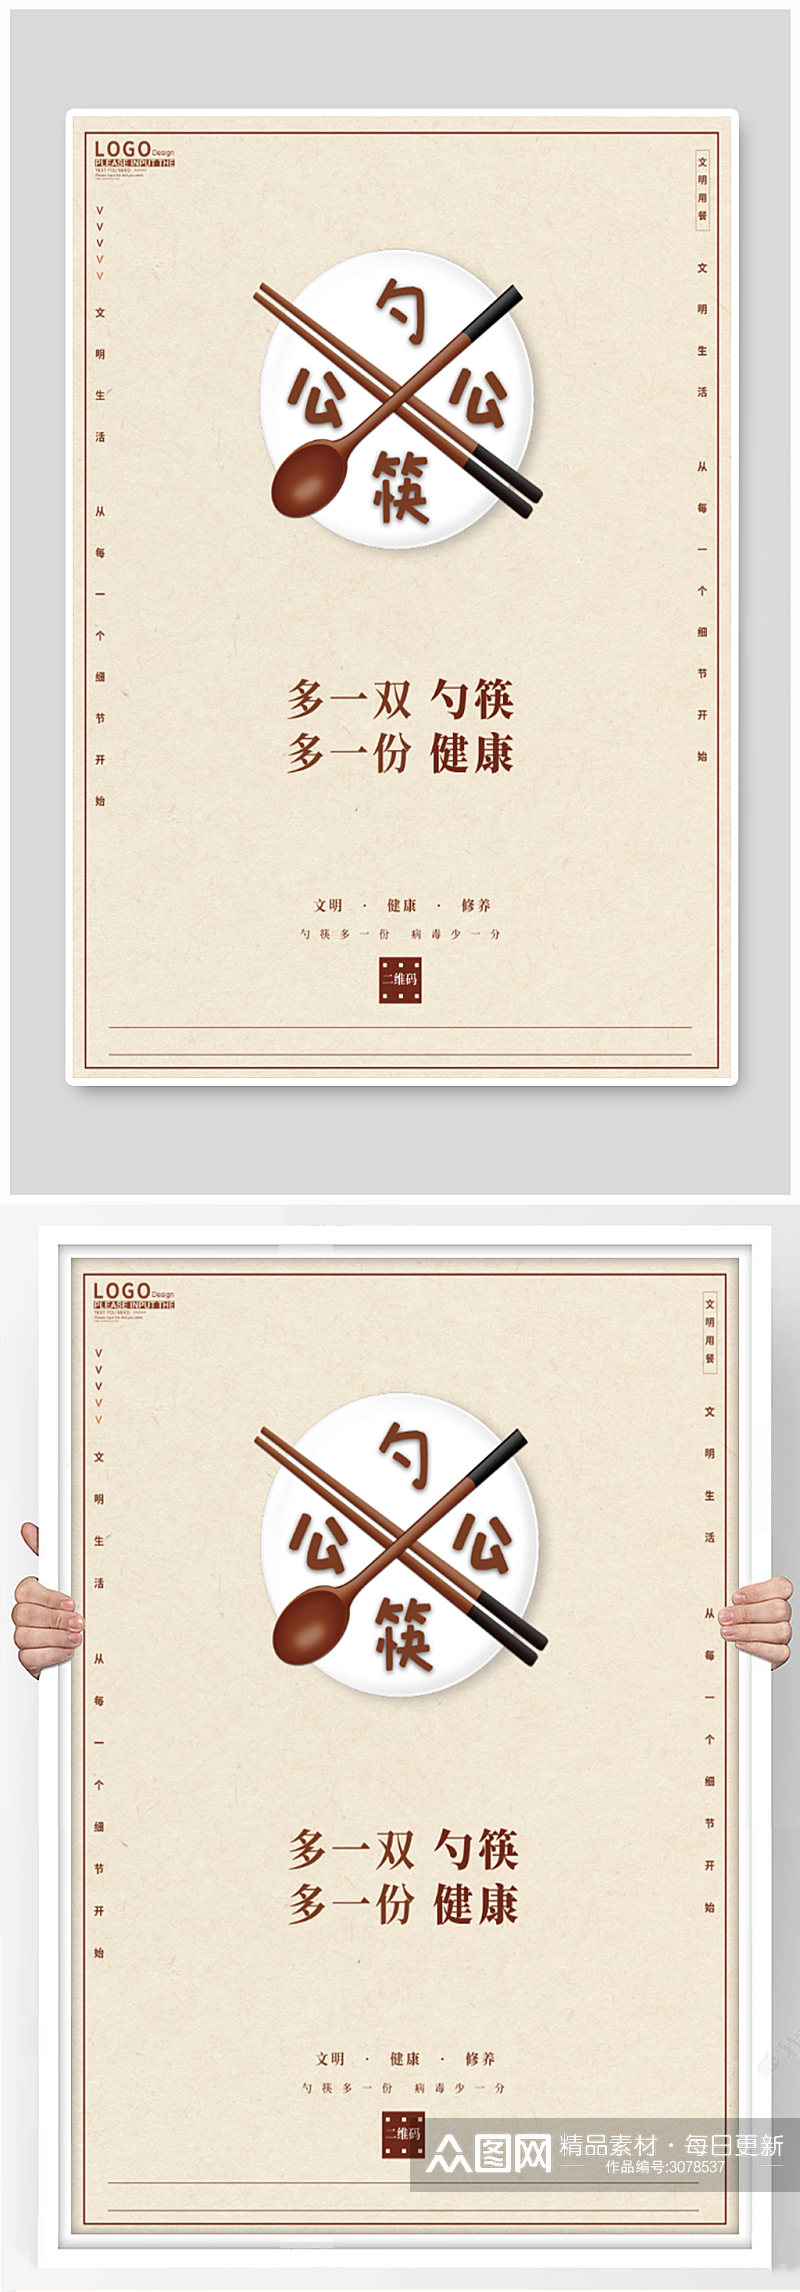 公勺公筷文明用餐海报素材